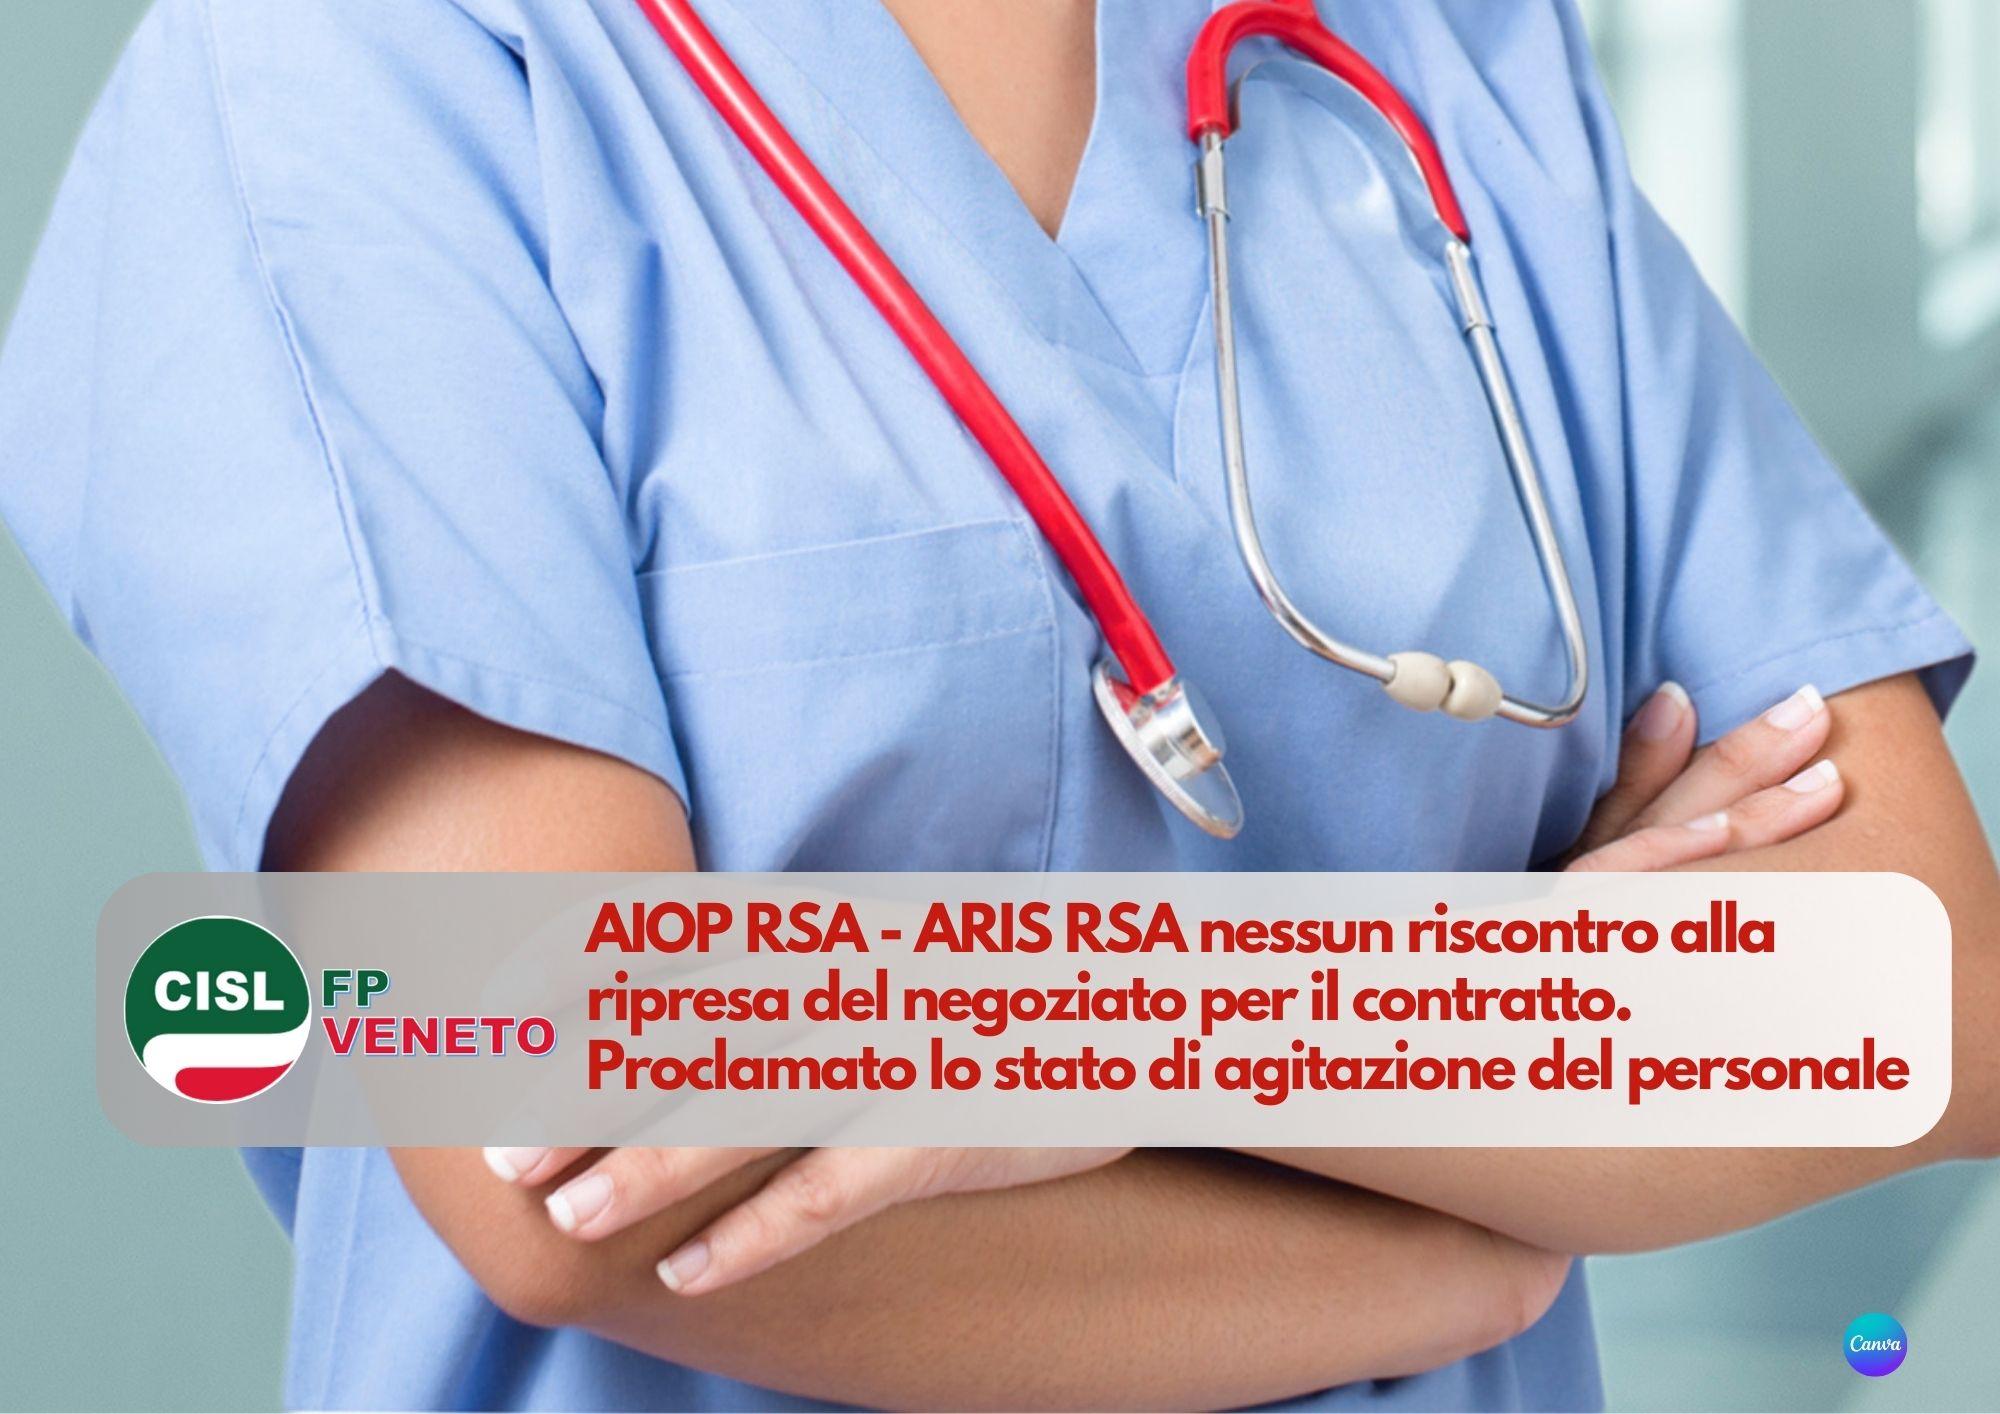 CISL FP Veneto. AIOP RSA - ARIS RSA nessun riscontro. Stato di agitazione, verso la mobilitazione.